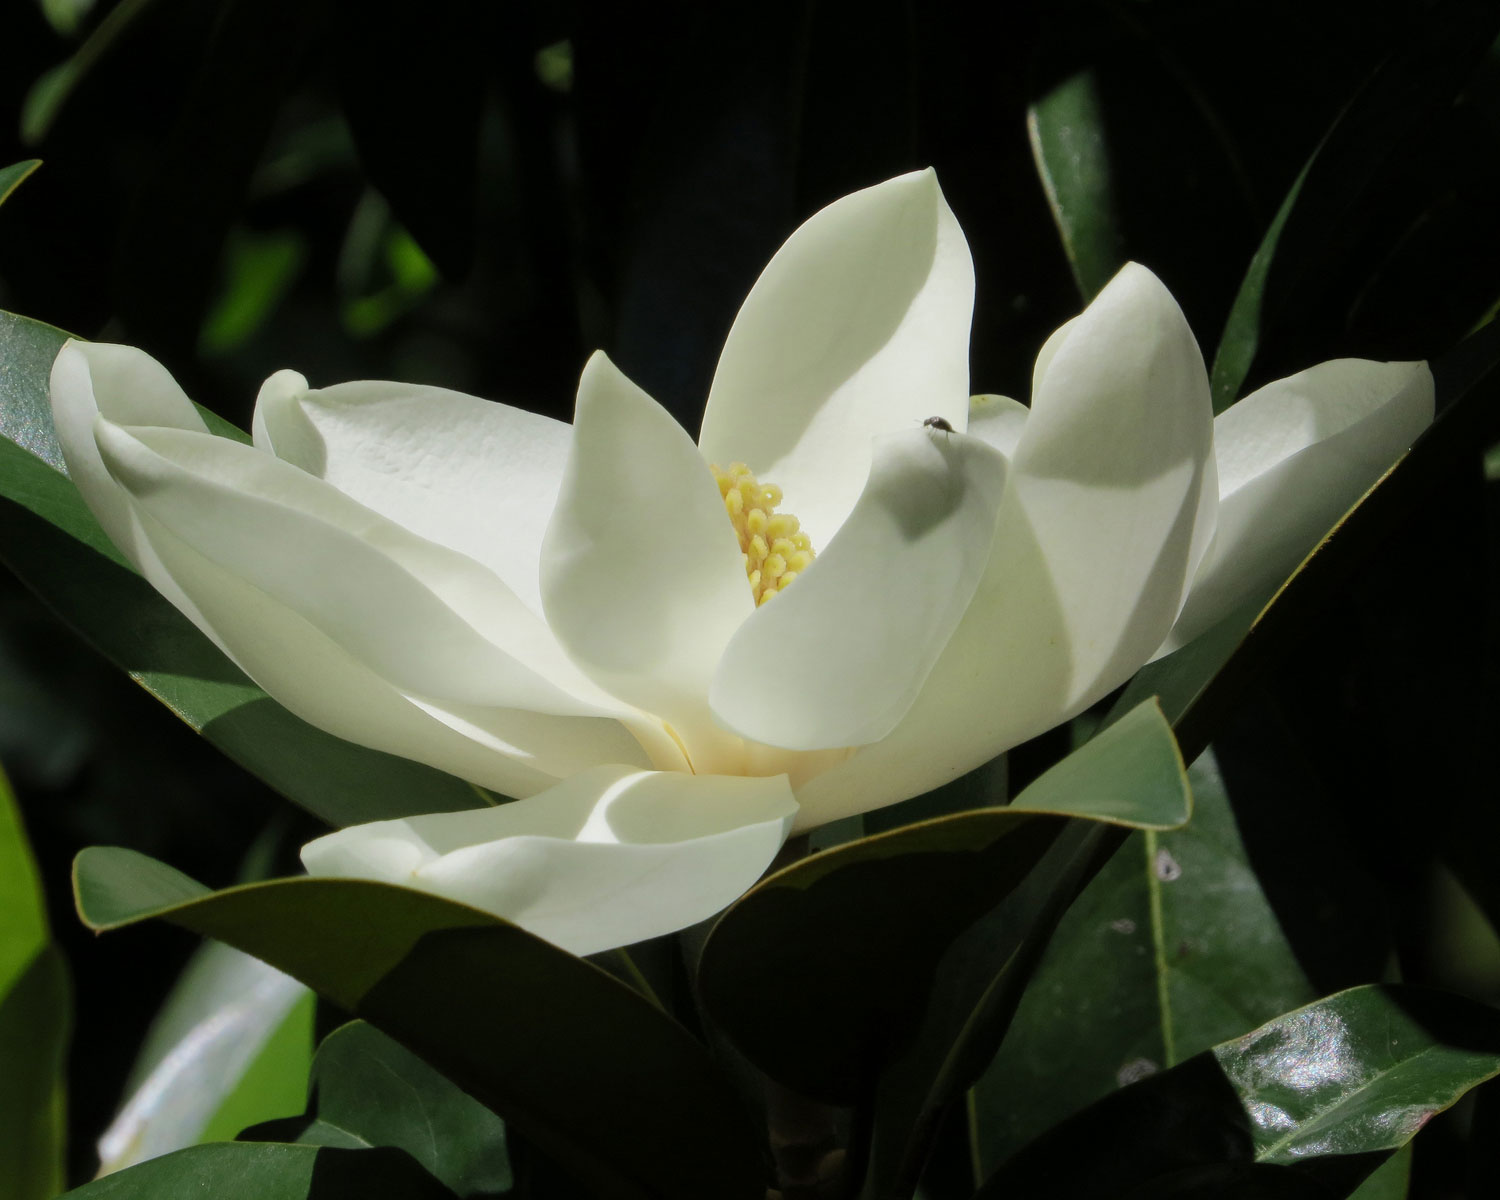 magnolia tree flower bloom